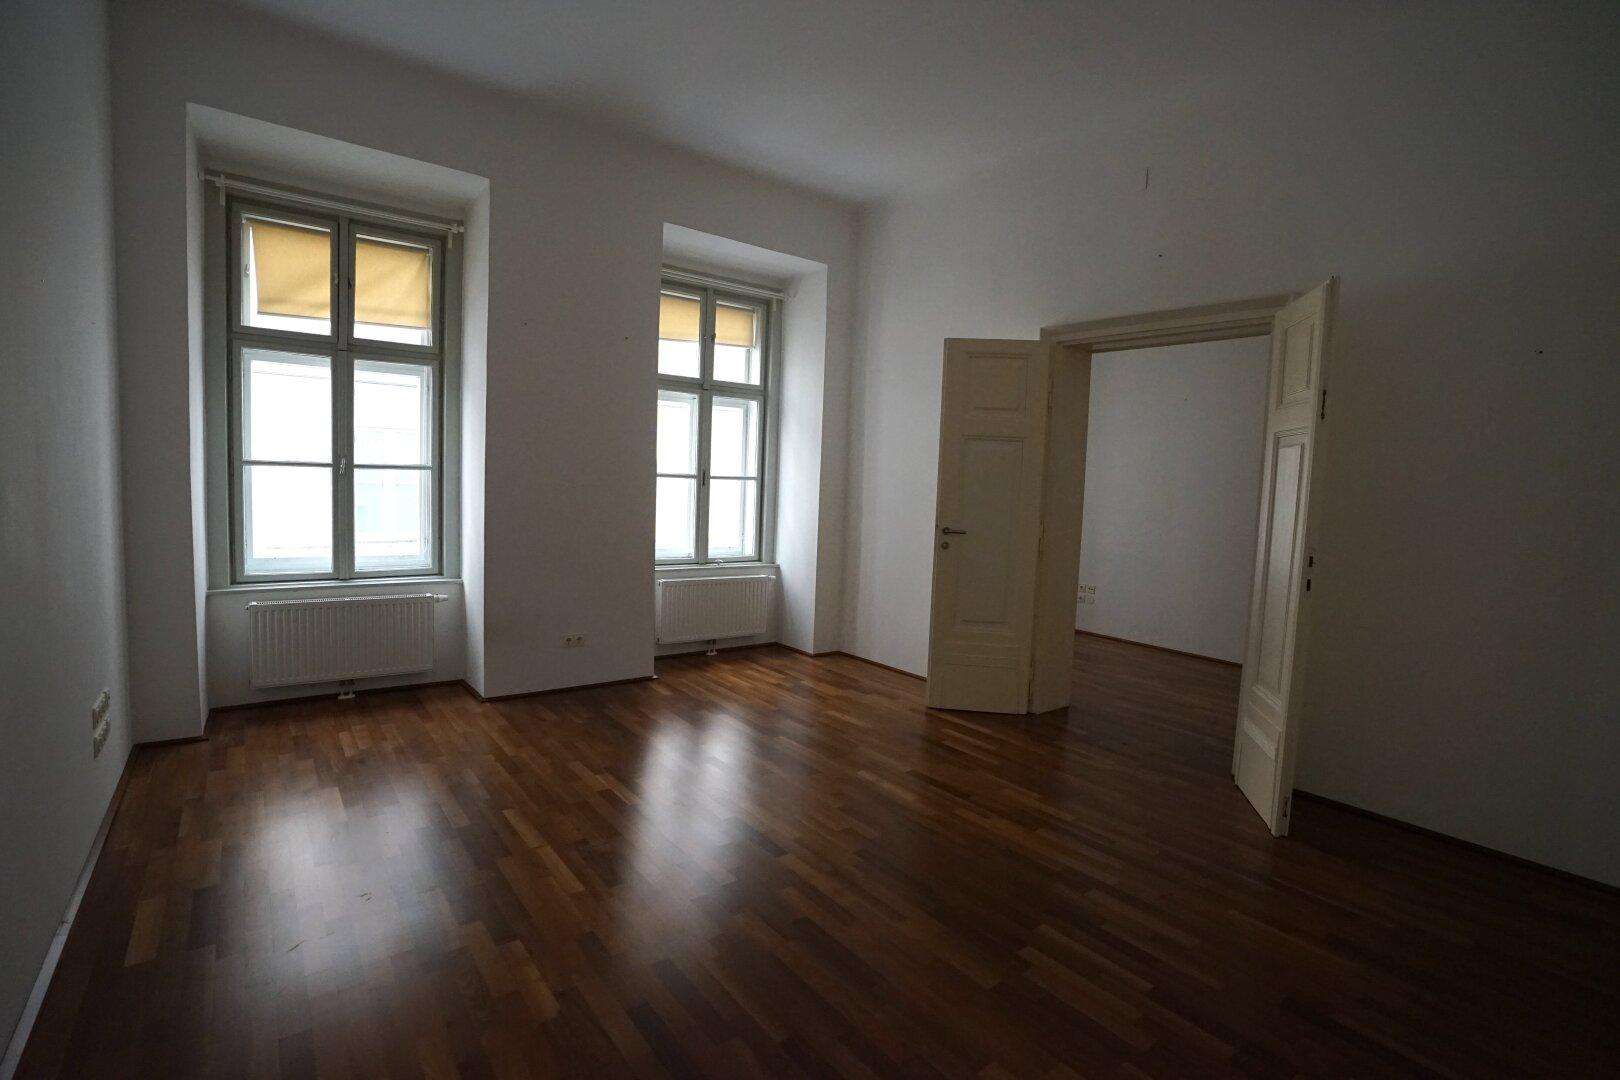 1010 Wien: Schöne 2-Zimmer Wohnung am Fleischmarkt; 56m²; 1.017,- Euro Miete